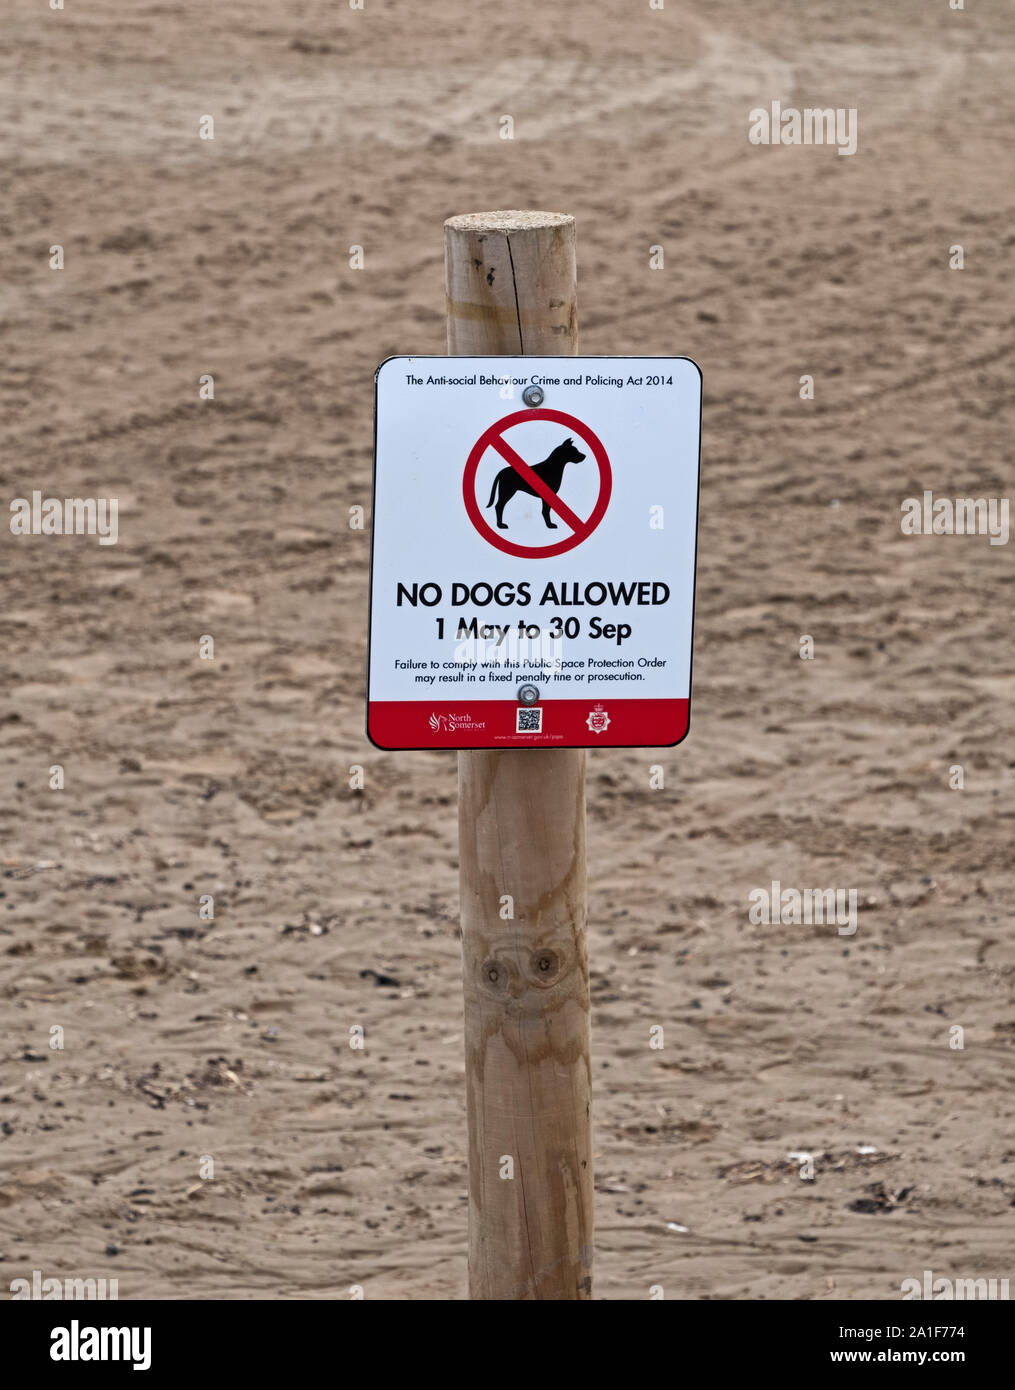 Un signe indiquant que les chiens ne sont pas admis sur la plage à Weston-super-Mare, au Royaume-Uni entre le 1er mai et le 30 septembre. Banque D'Images